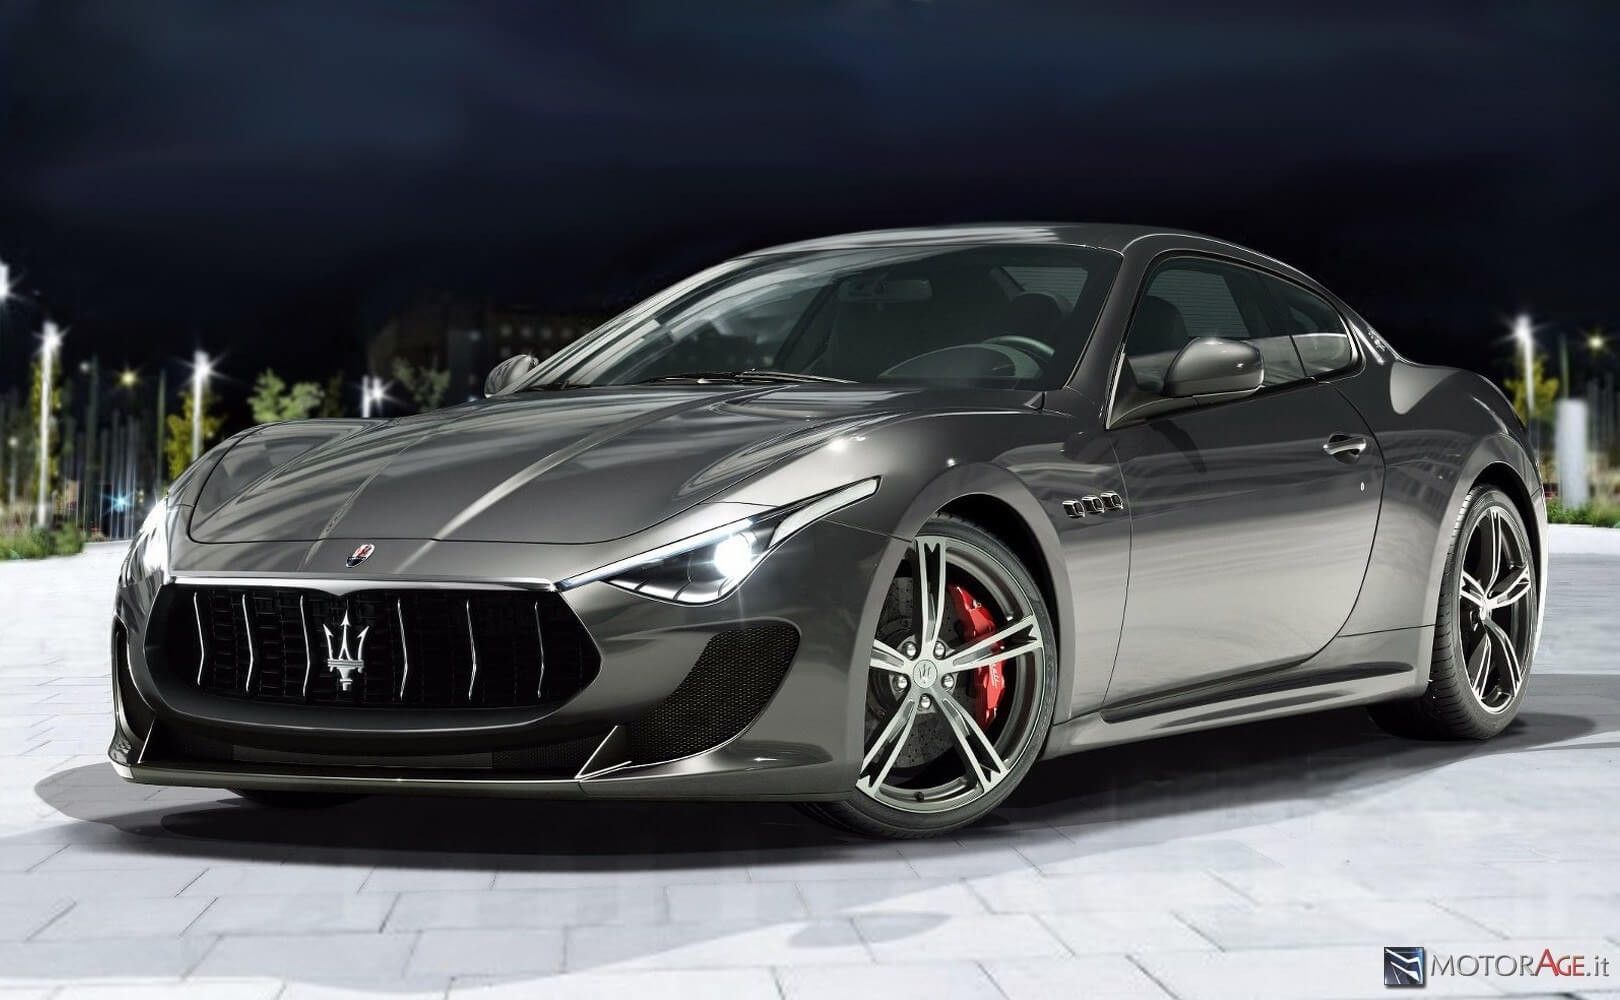 2019 Maserati Granturismo Exterior and Interior Review | Maserati car, Maserati  granturismo, Maserati quattroporte